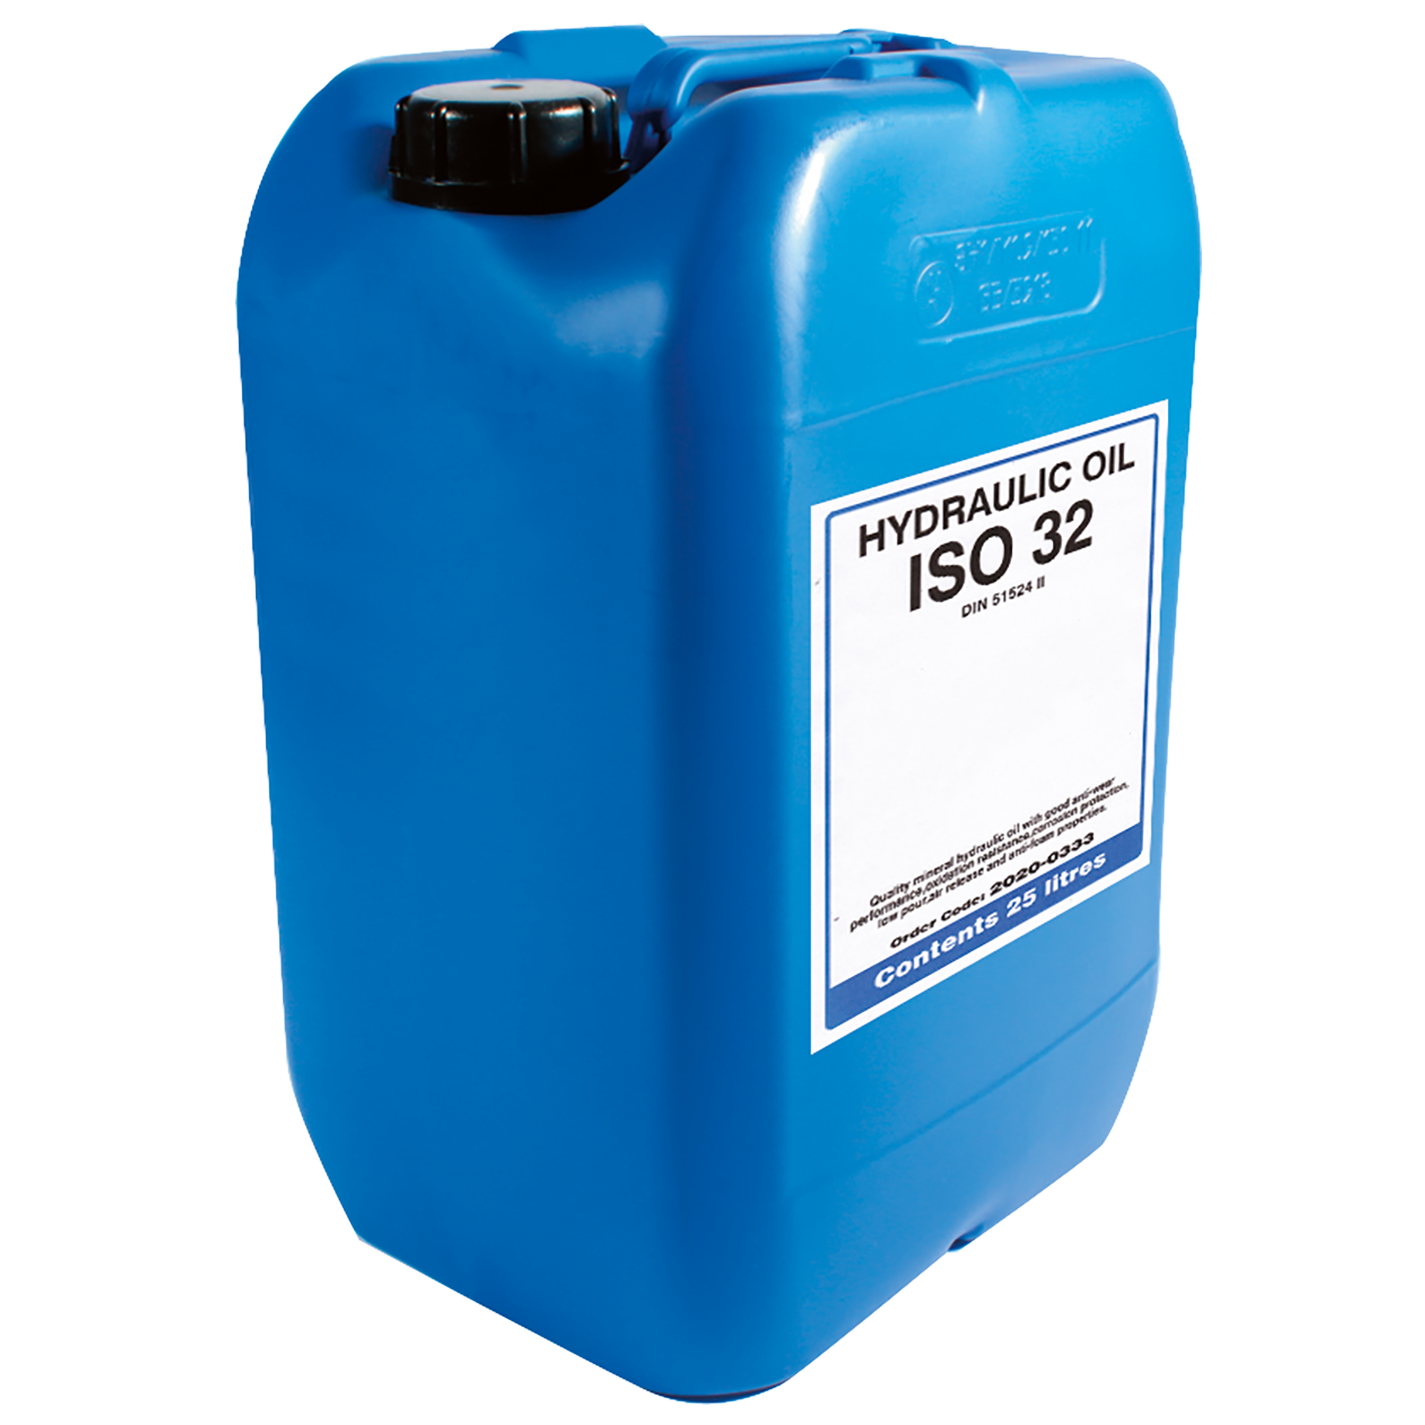 Hydraulic Oil & Fluid ISO 32 Drum